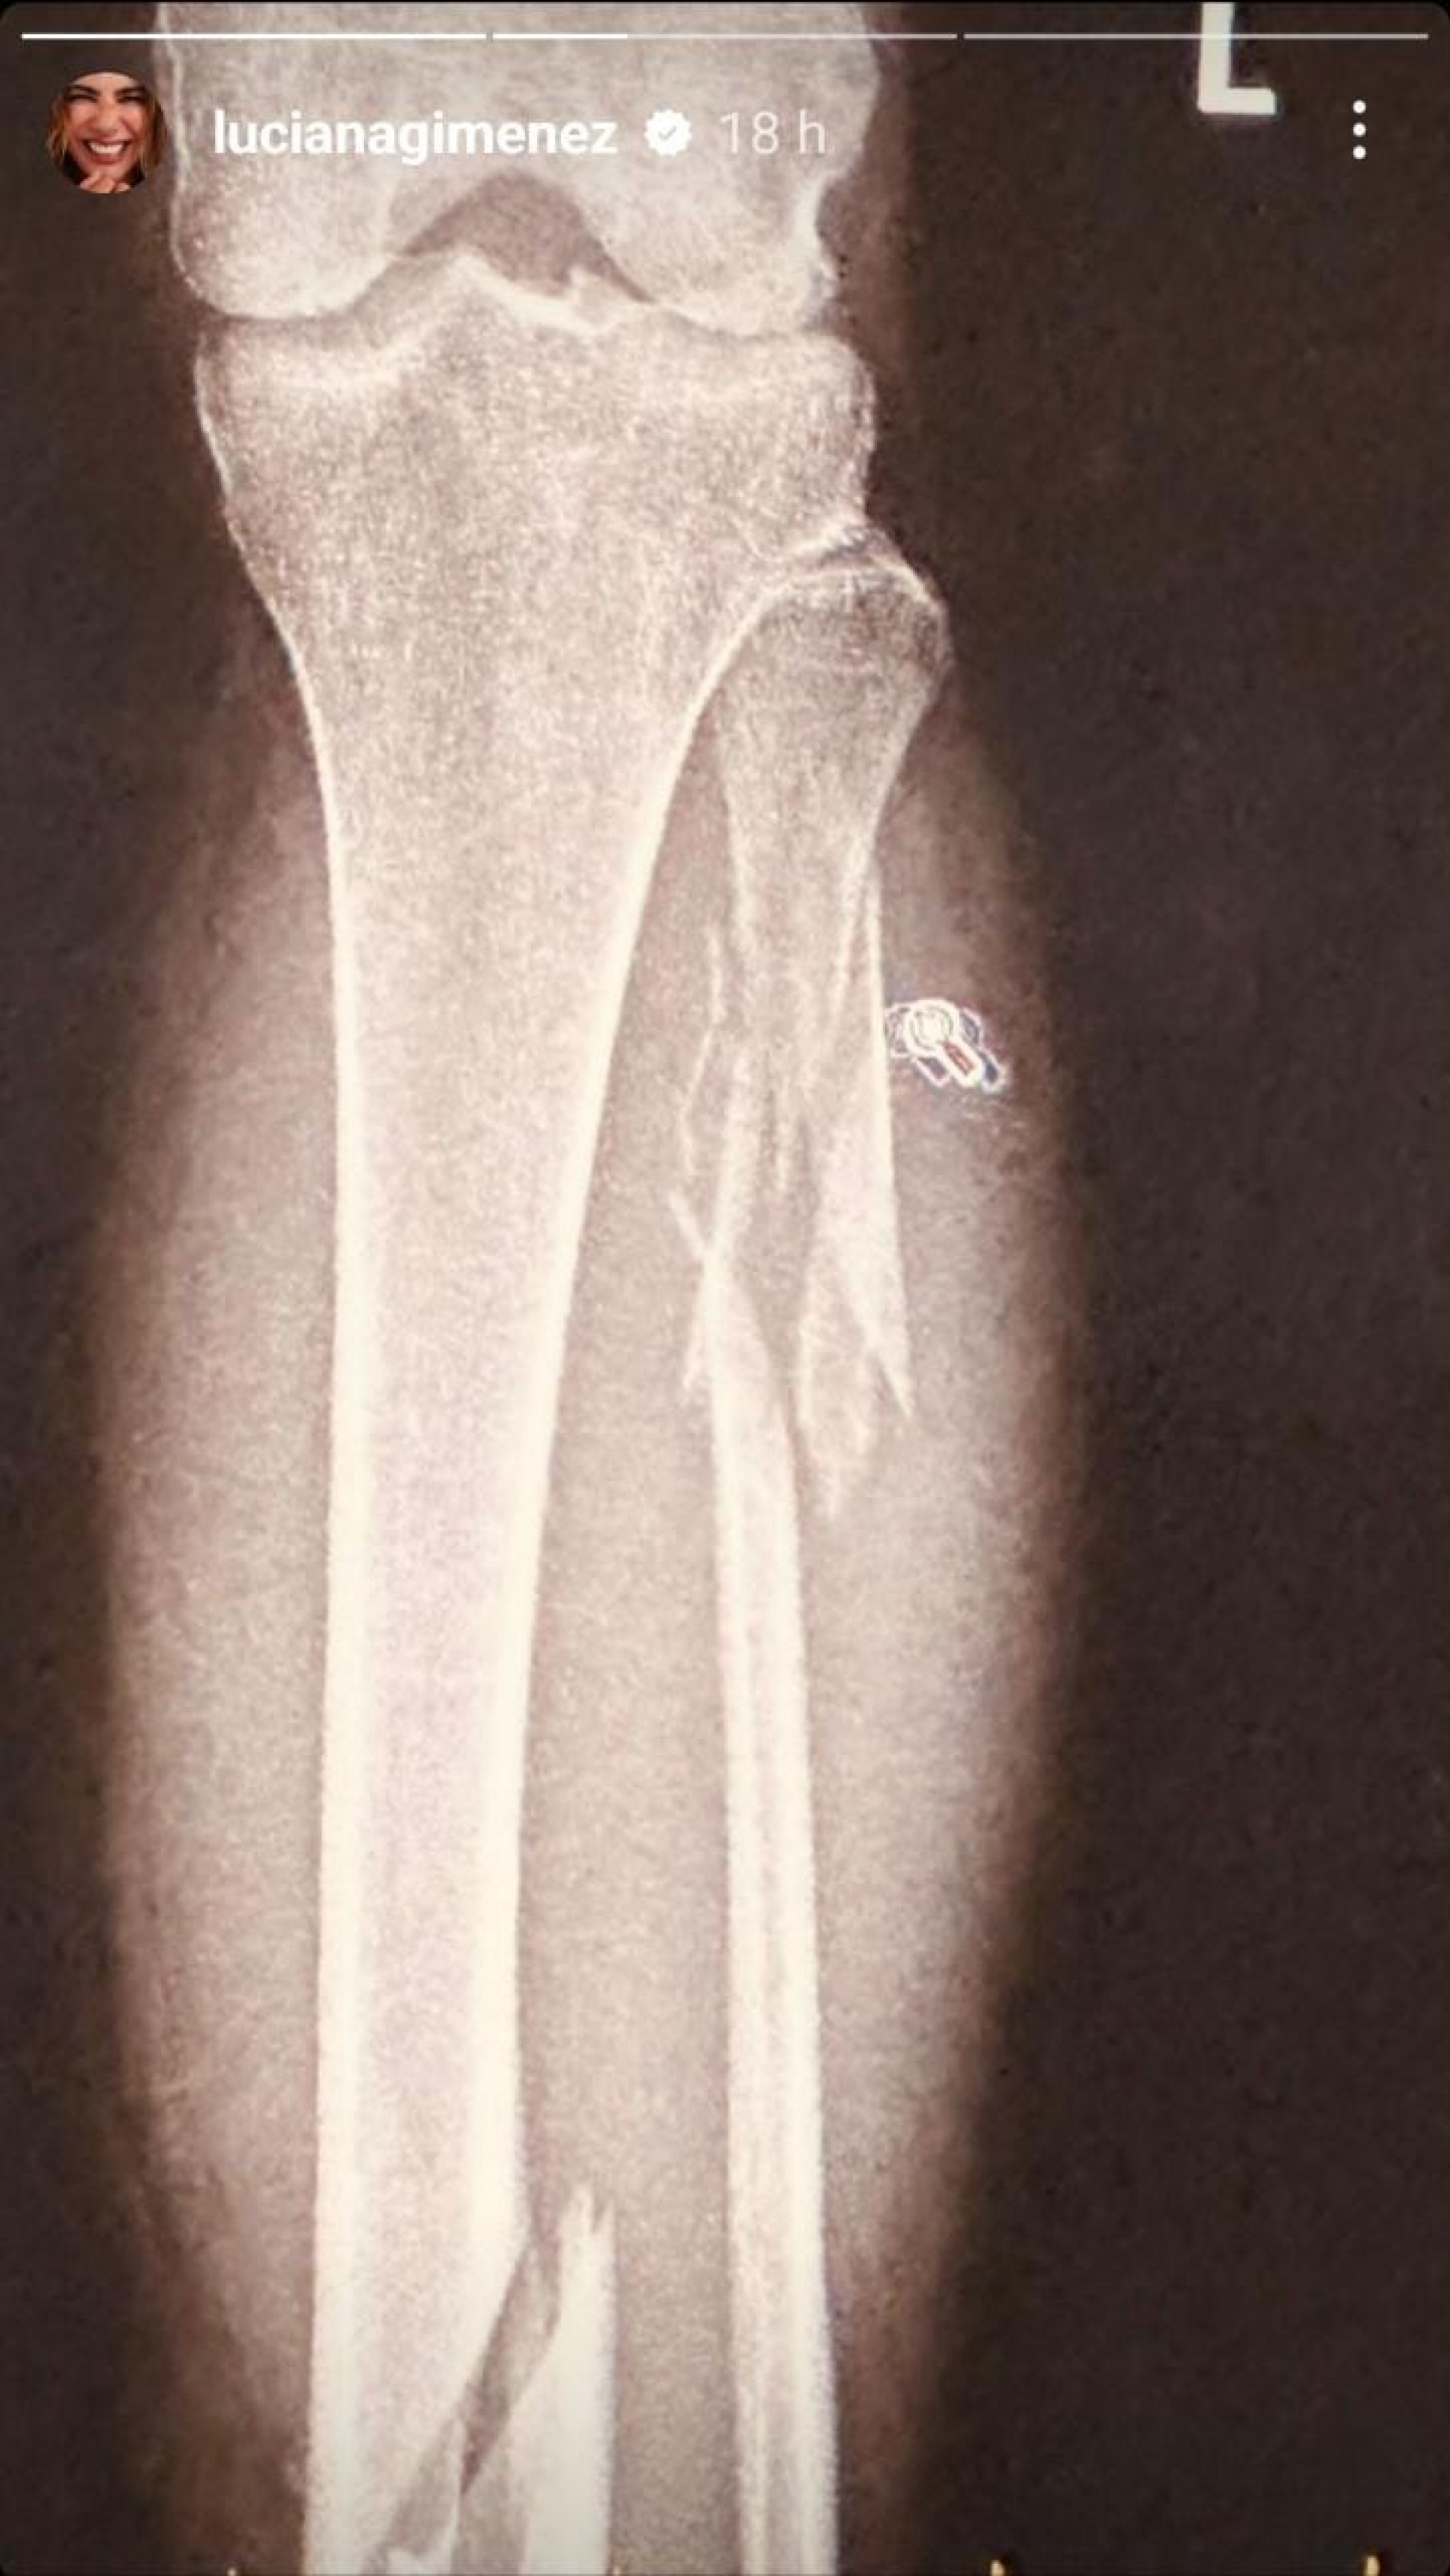 Luciana Gimenez divulgou o raio-x da perna fraturada após acidente grave